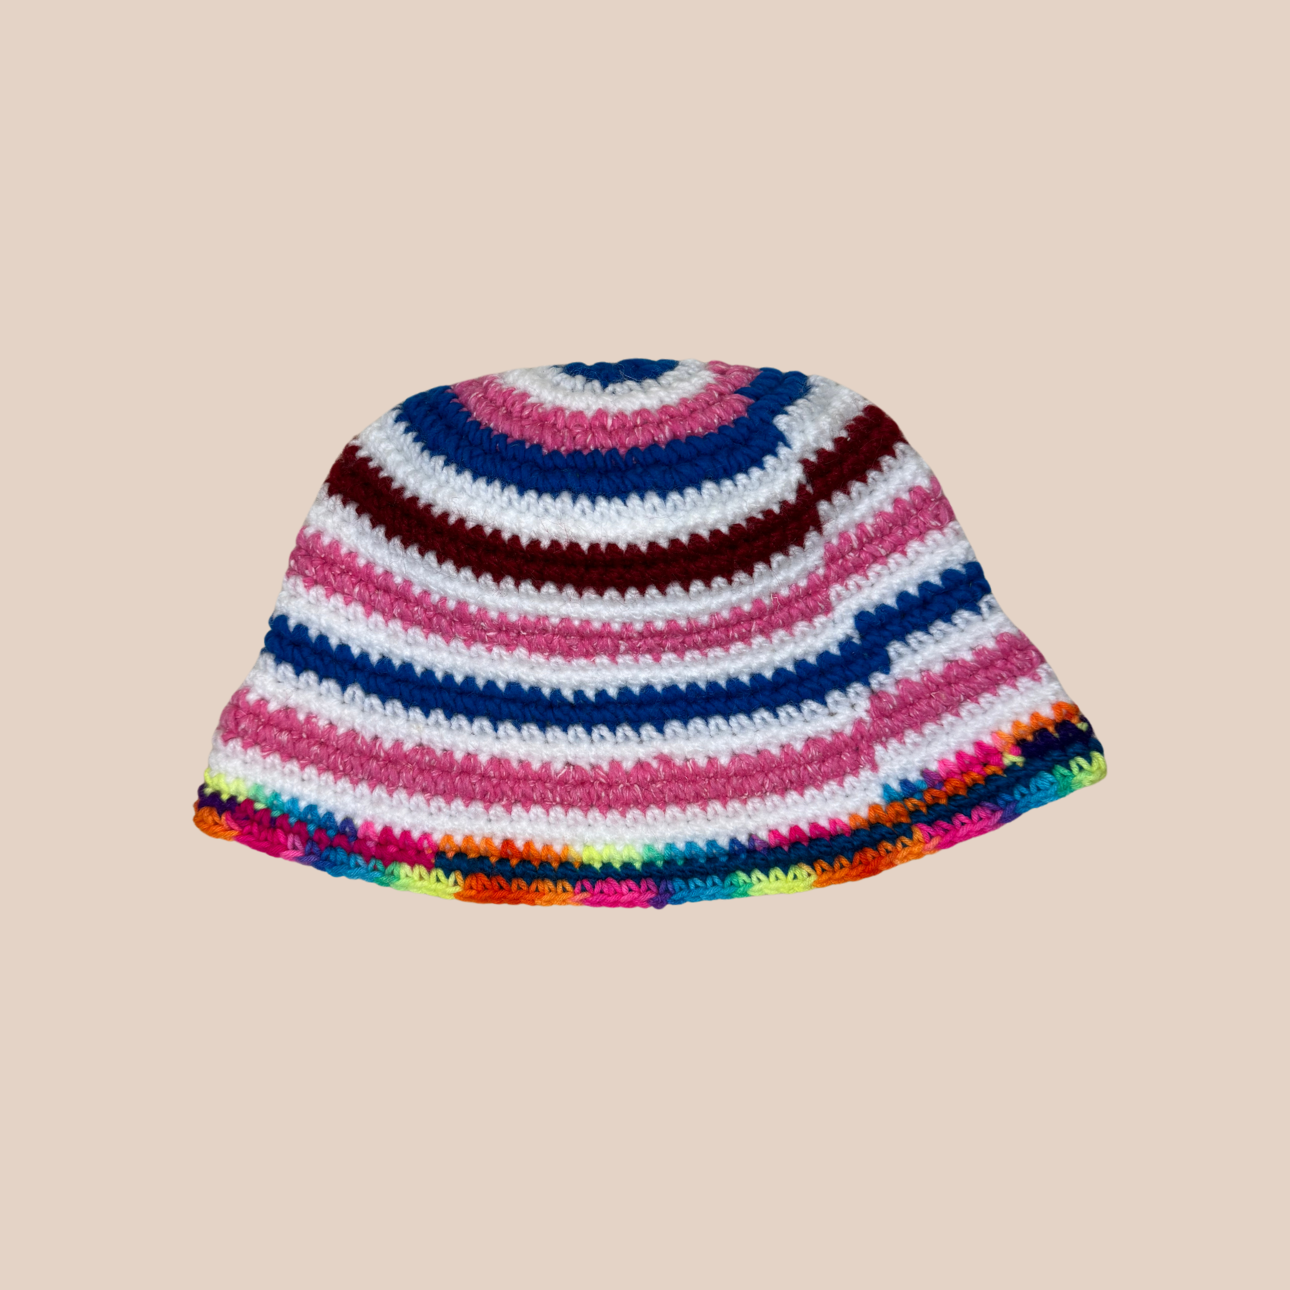 Image d'un bucket hat rayé crocheté en laine et acrylique de Maison Badigo, arborant des couleurs vives et audacieuses